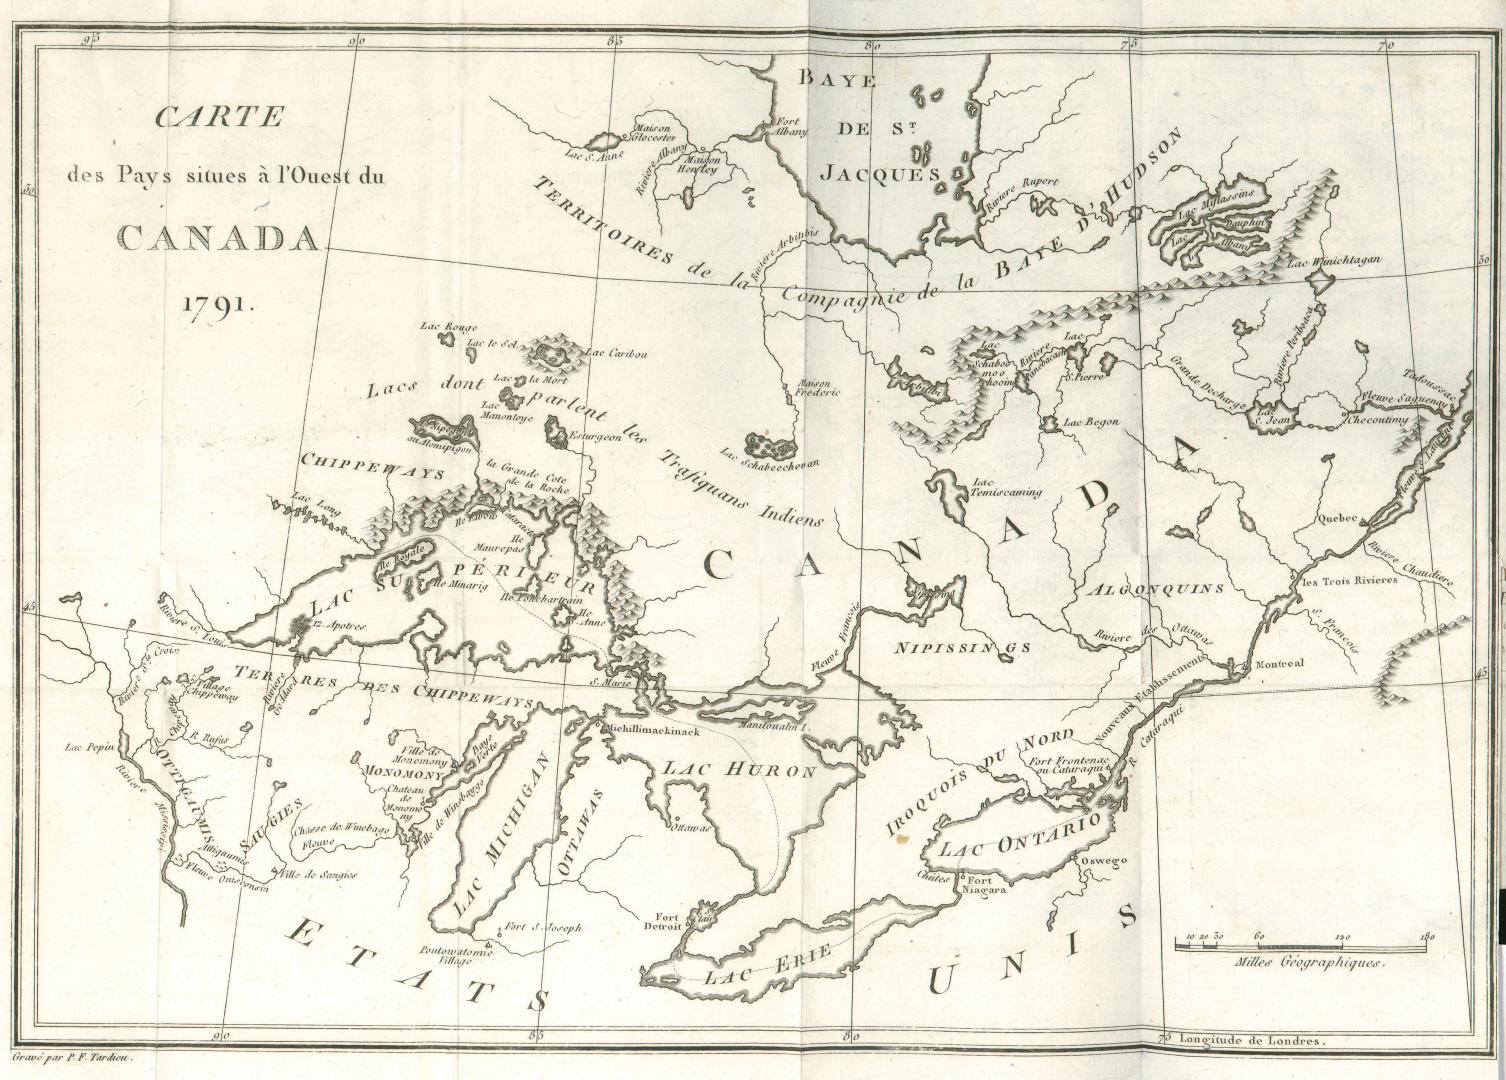 Carte des pays situes à l'ouest du Canada 1791